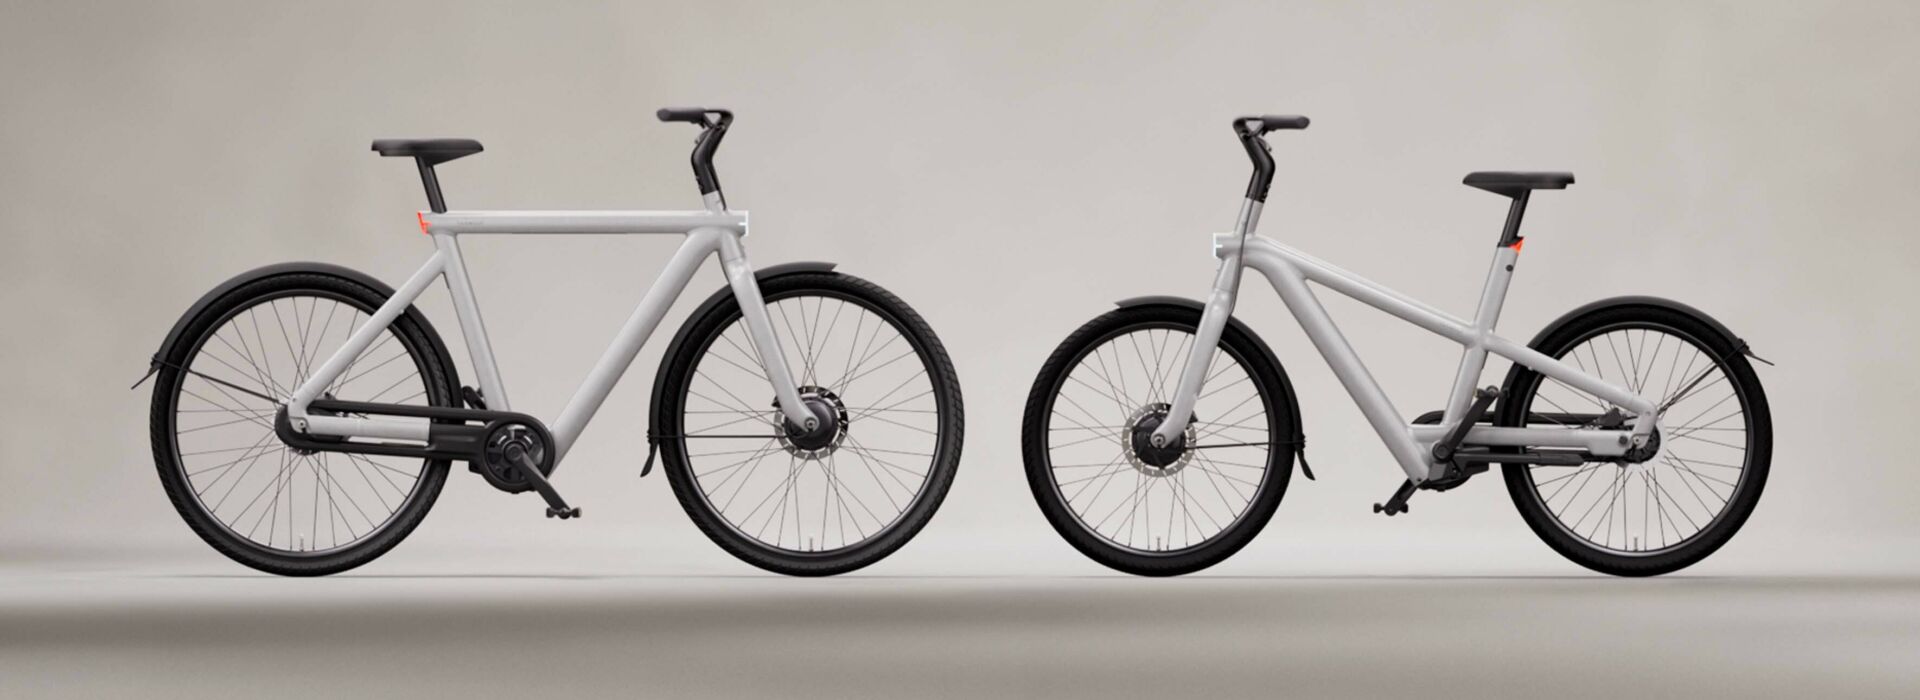 Wir stellen vor: Das VanMoof S5 & A5 – Unsere game changing E-Bikes, der nächsten Generation.